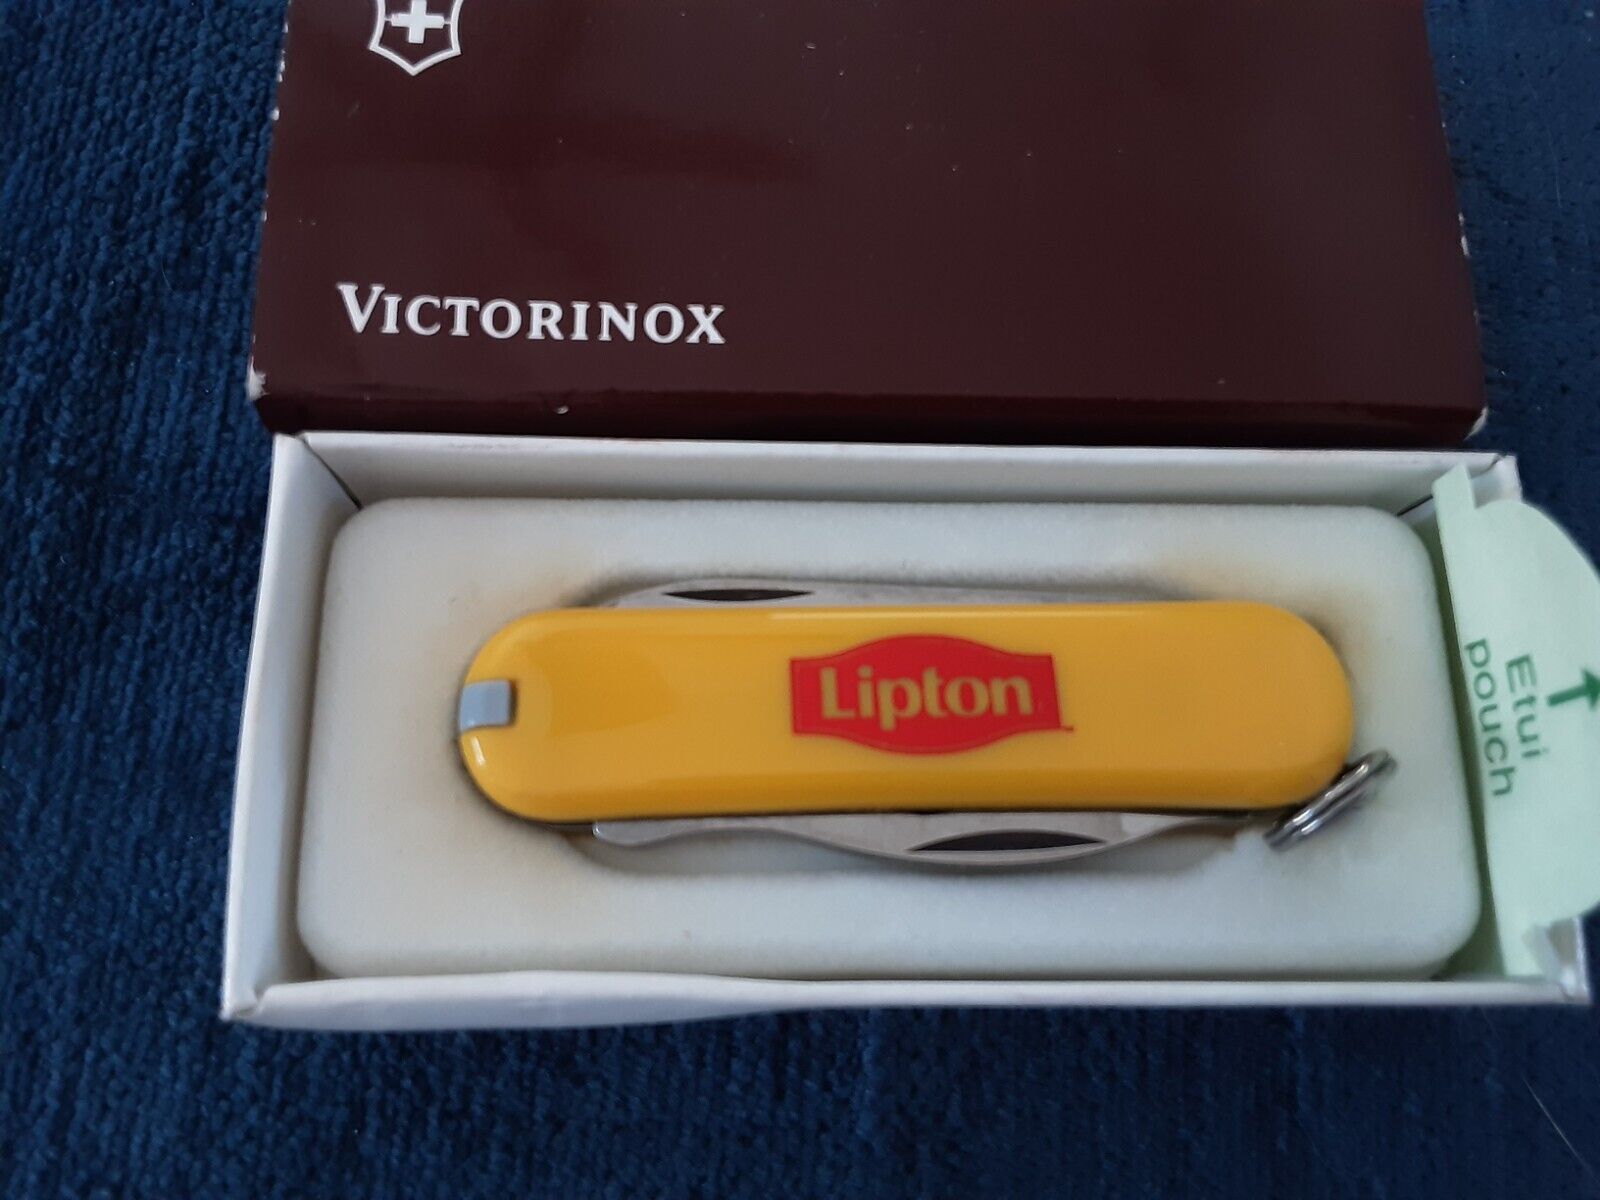 Vintage Victorinox Swiss Army Knife Very Rare Lipton.